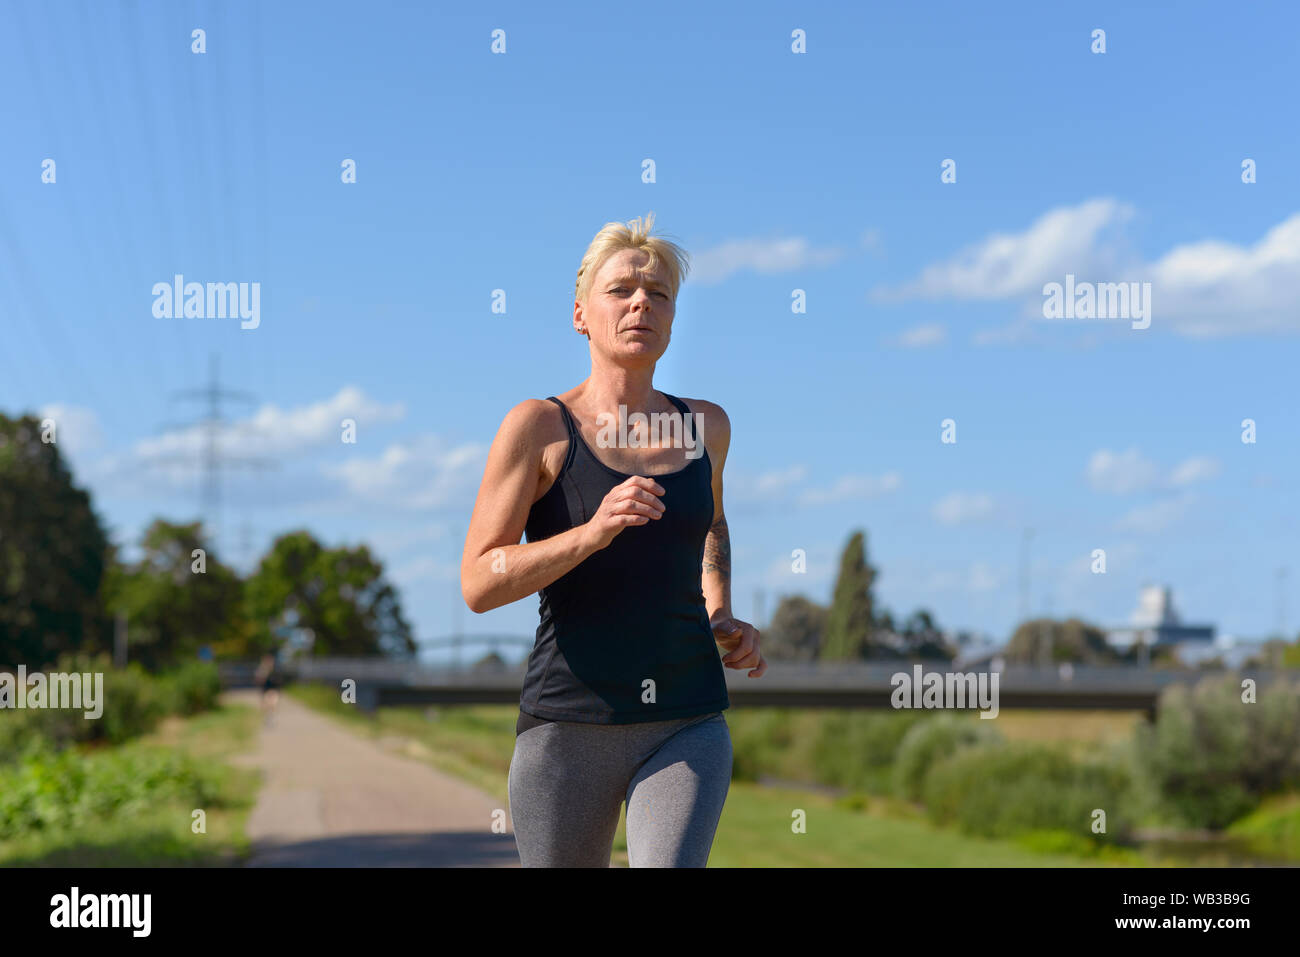 Frau Joggen im Freien im Sommer Sonne nähert sich die Kamera in einem niedrigen Winkel drei Viertel Ansicht konzeptionelle Gesundheit und Fitness Stockfoto